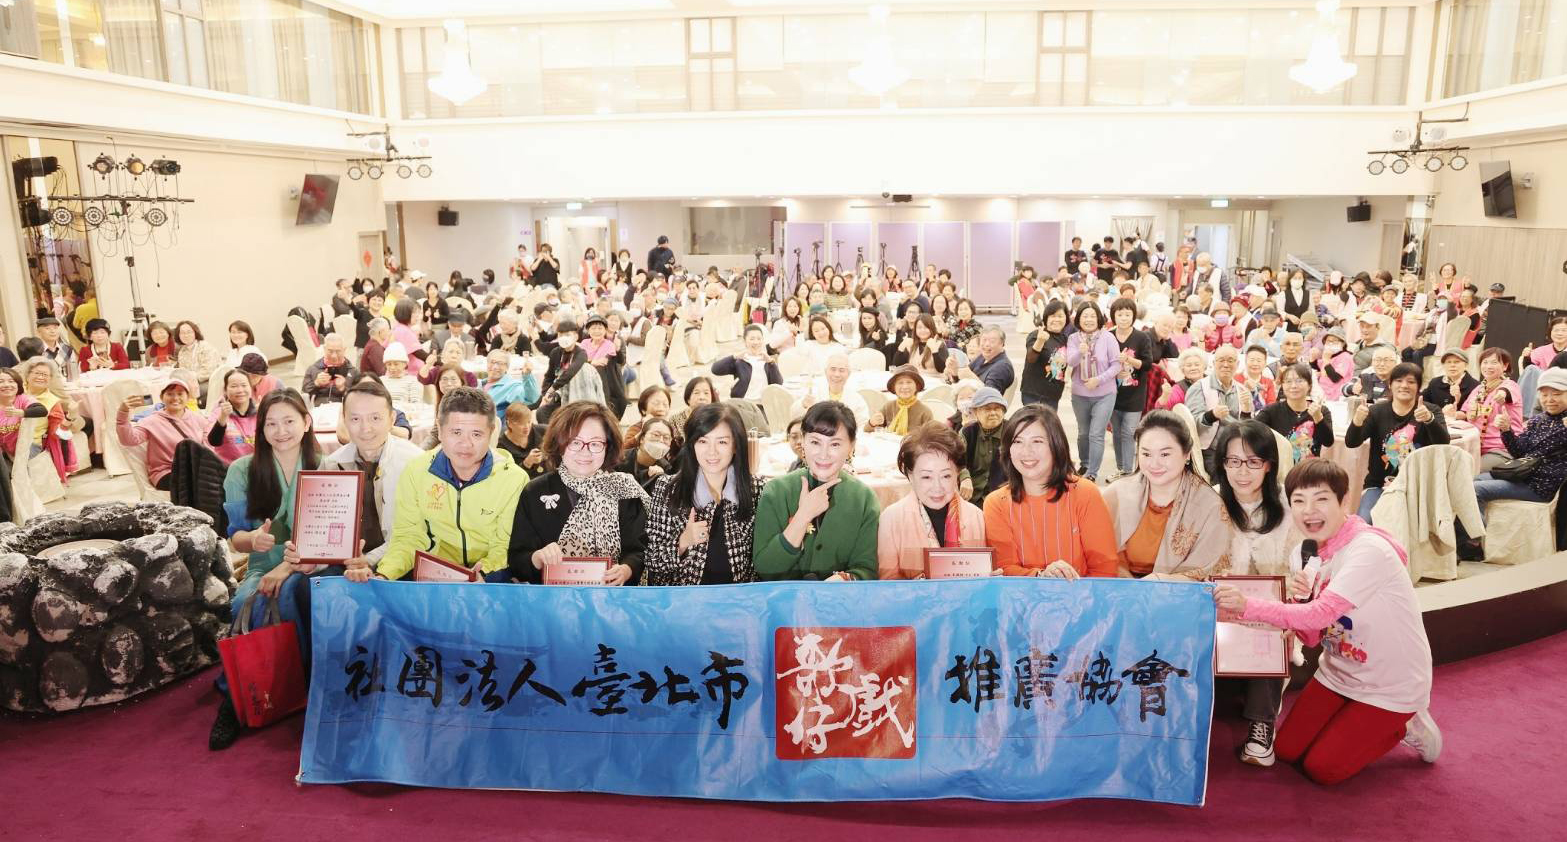 臺北市歌仔戲推廣協會舉辦2024歡喜大圍爐公益辦桌活動。